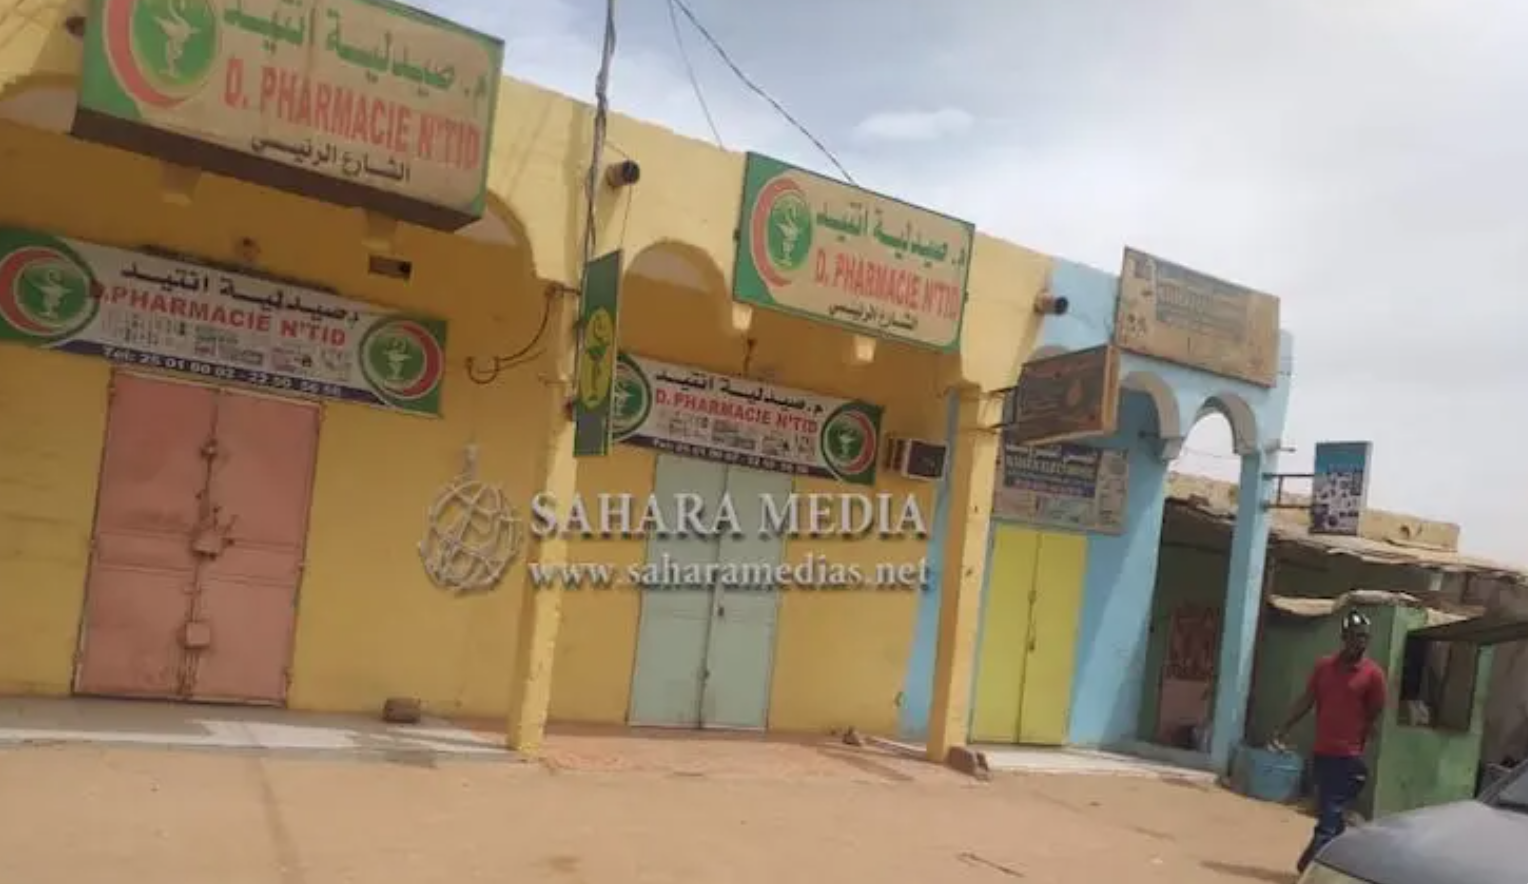 Mauritanie : le ministère de la santé procède à la fermeture momentanée de pharmacies ayant commis des infractions